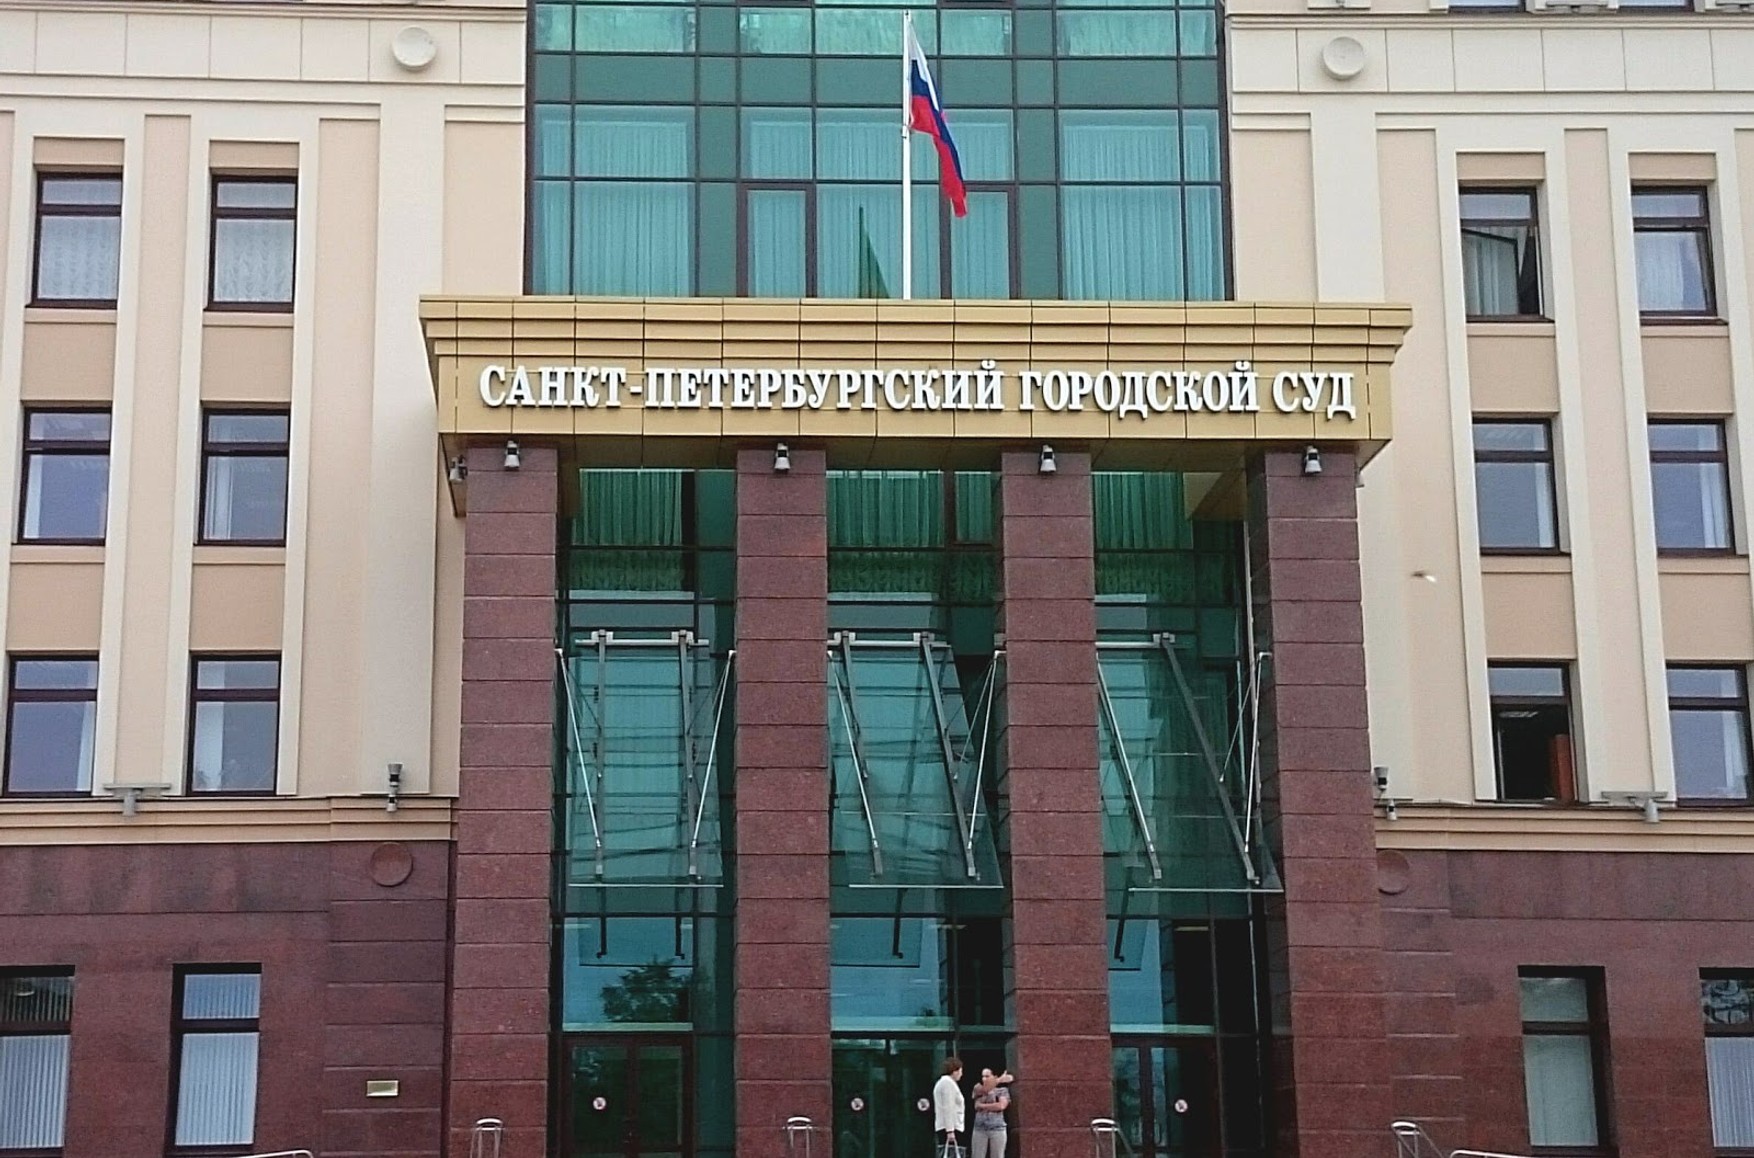 Суд Петербурга звільнив колишнього слідчого СК РФ, якого звинувачували в розкраданні 11 кг кокаїну